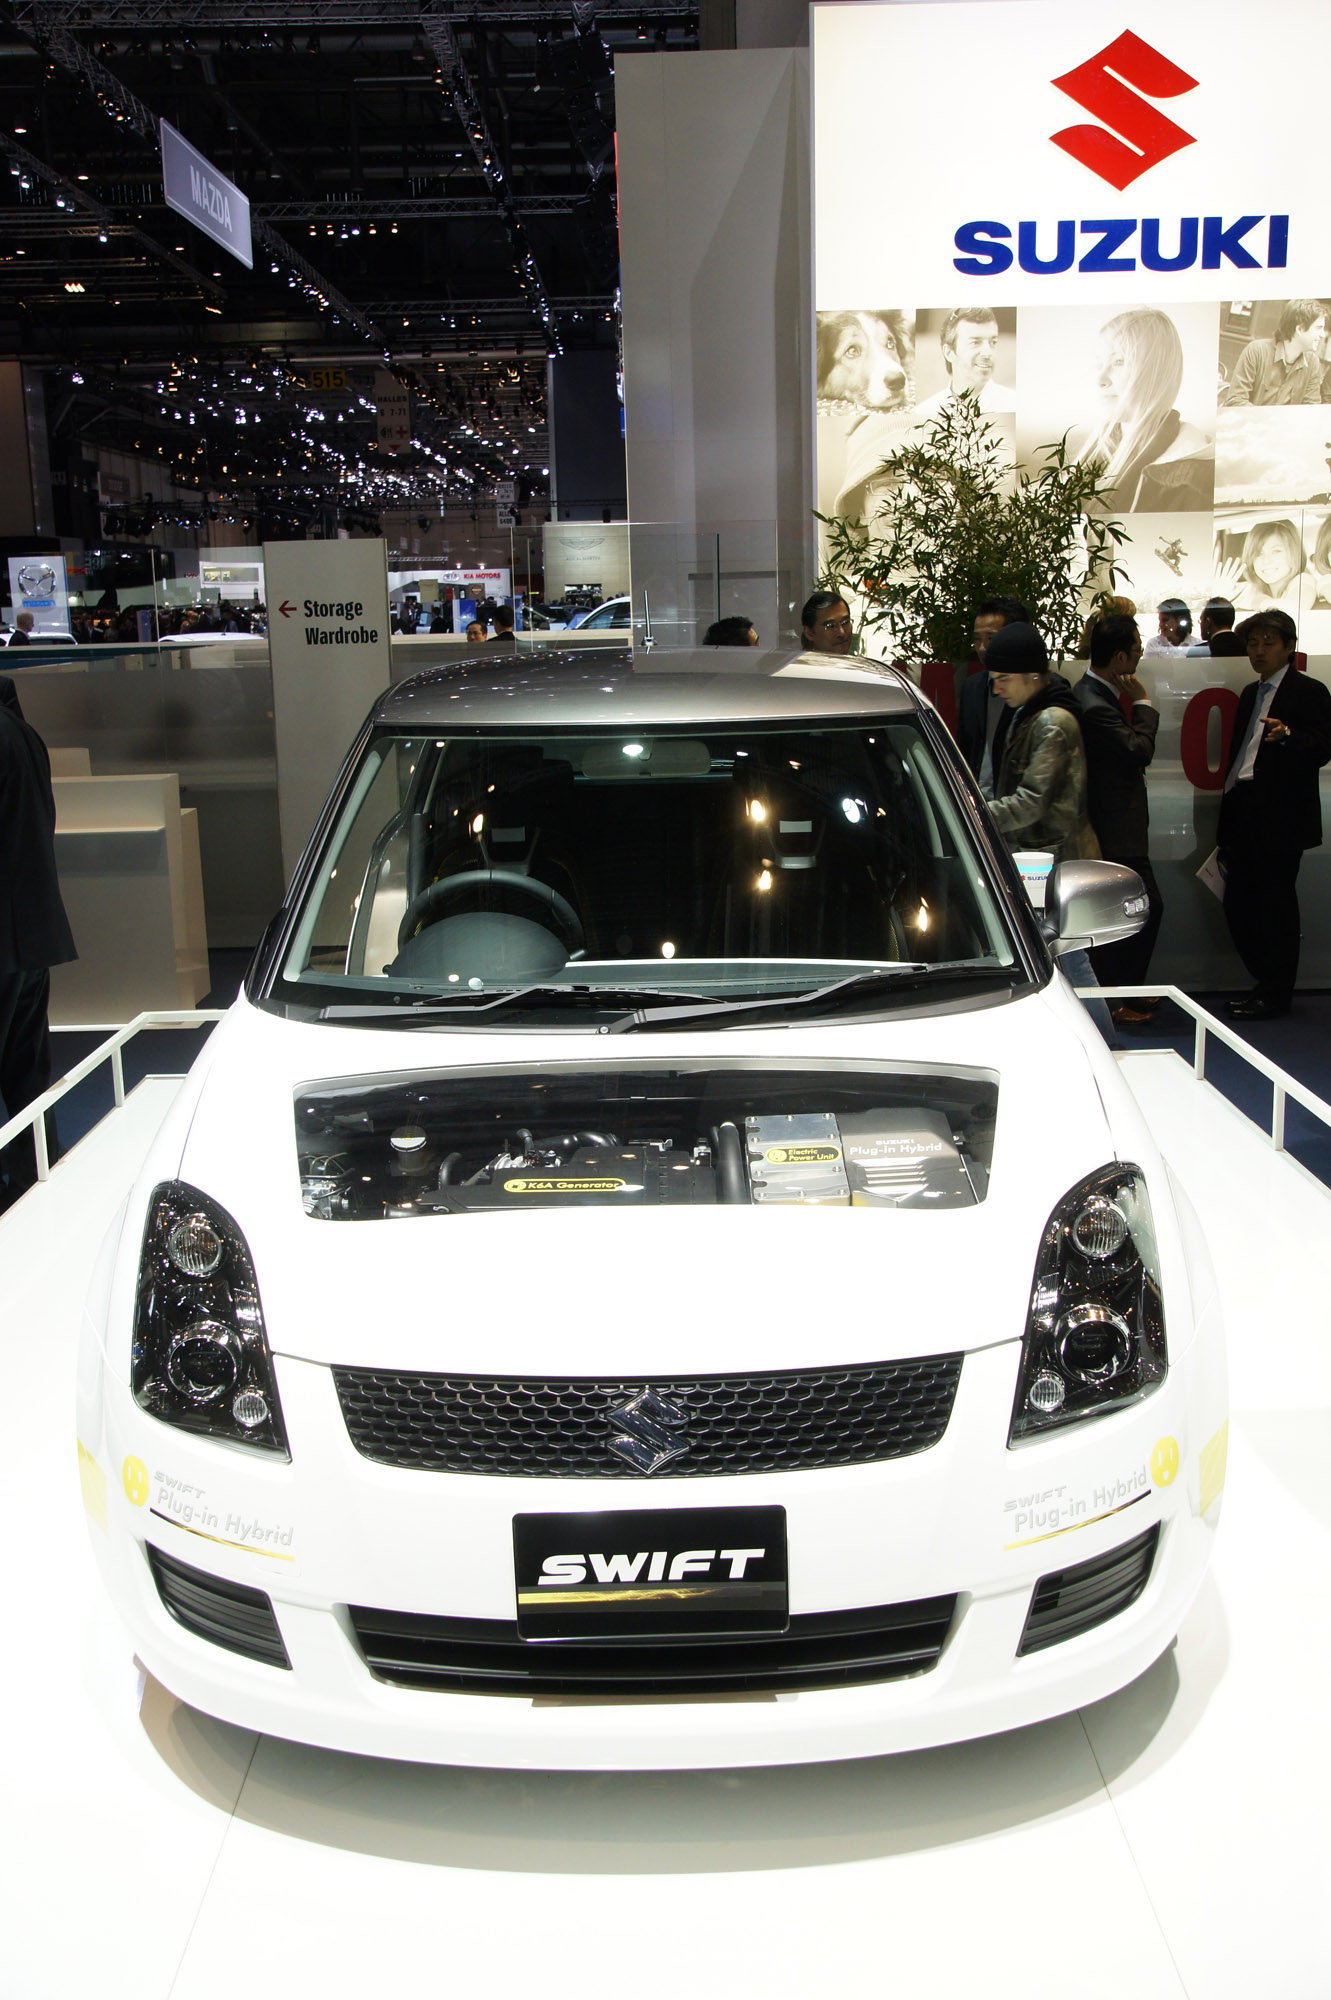 Suzuki Swift Geneva